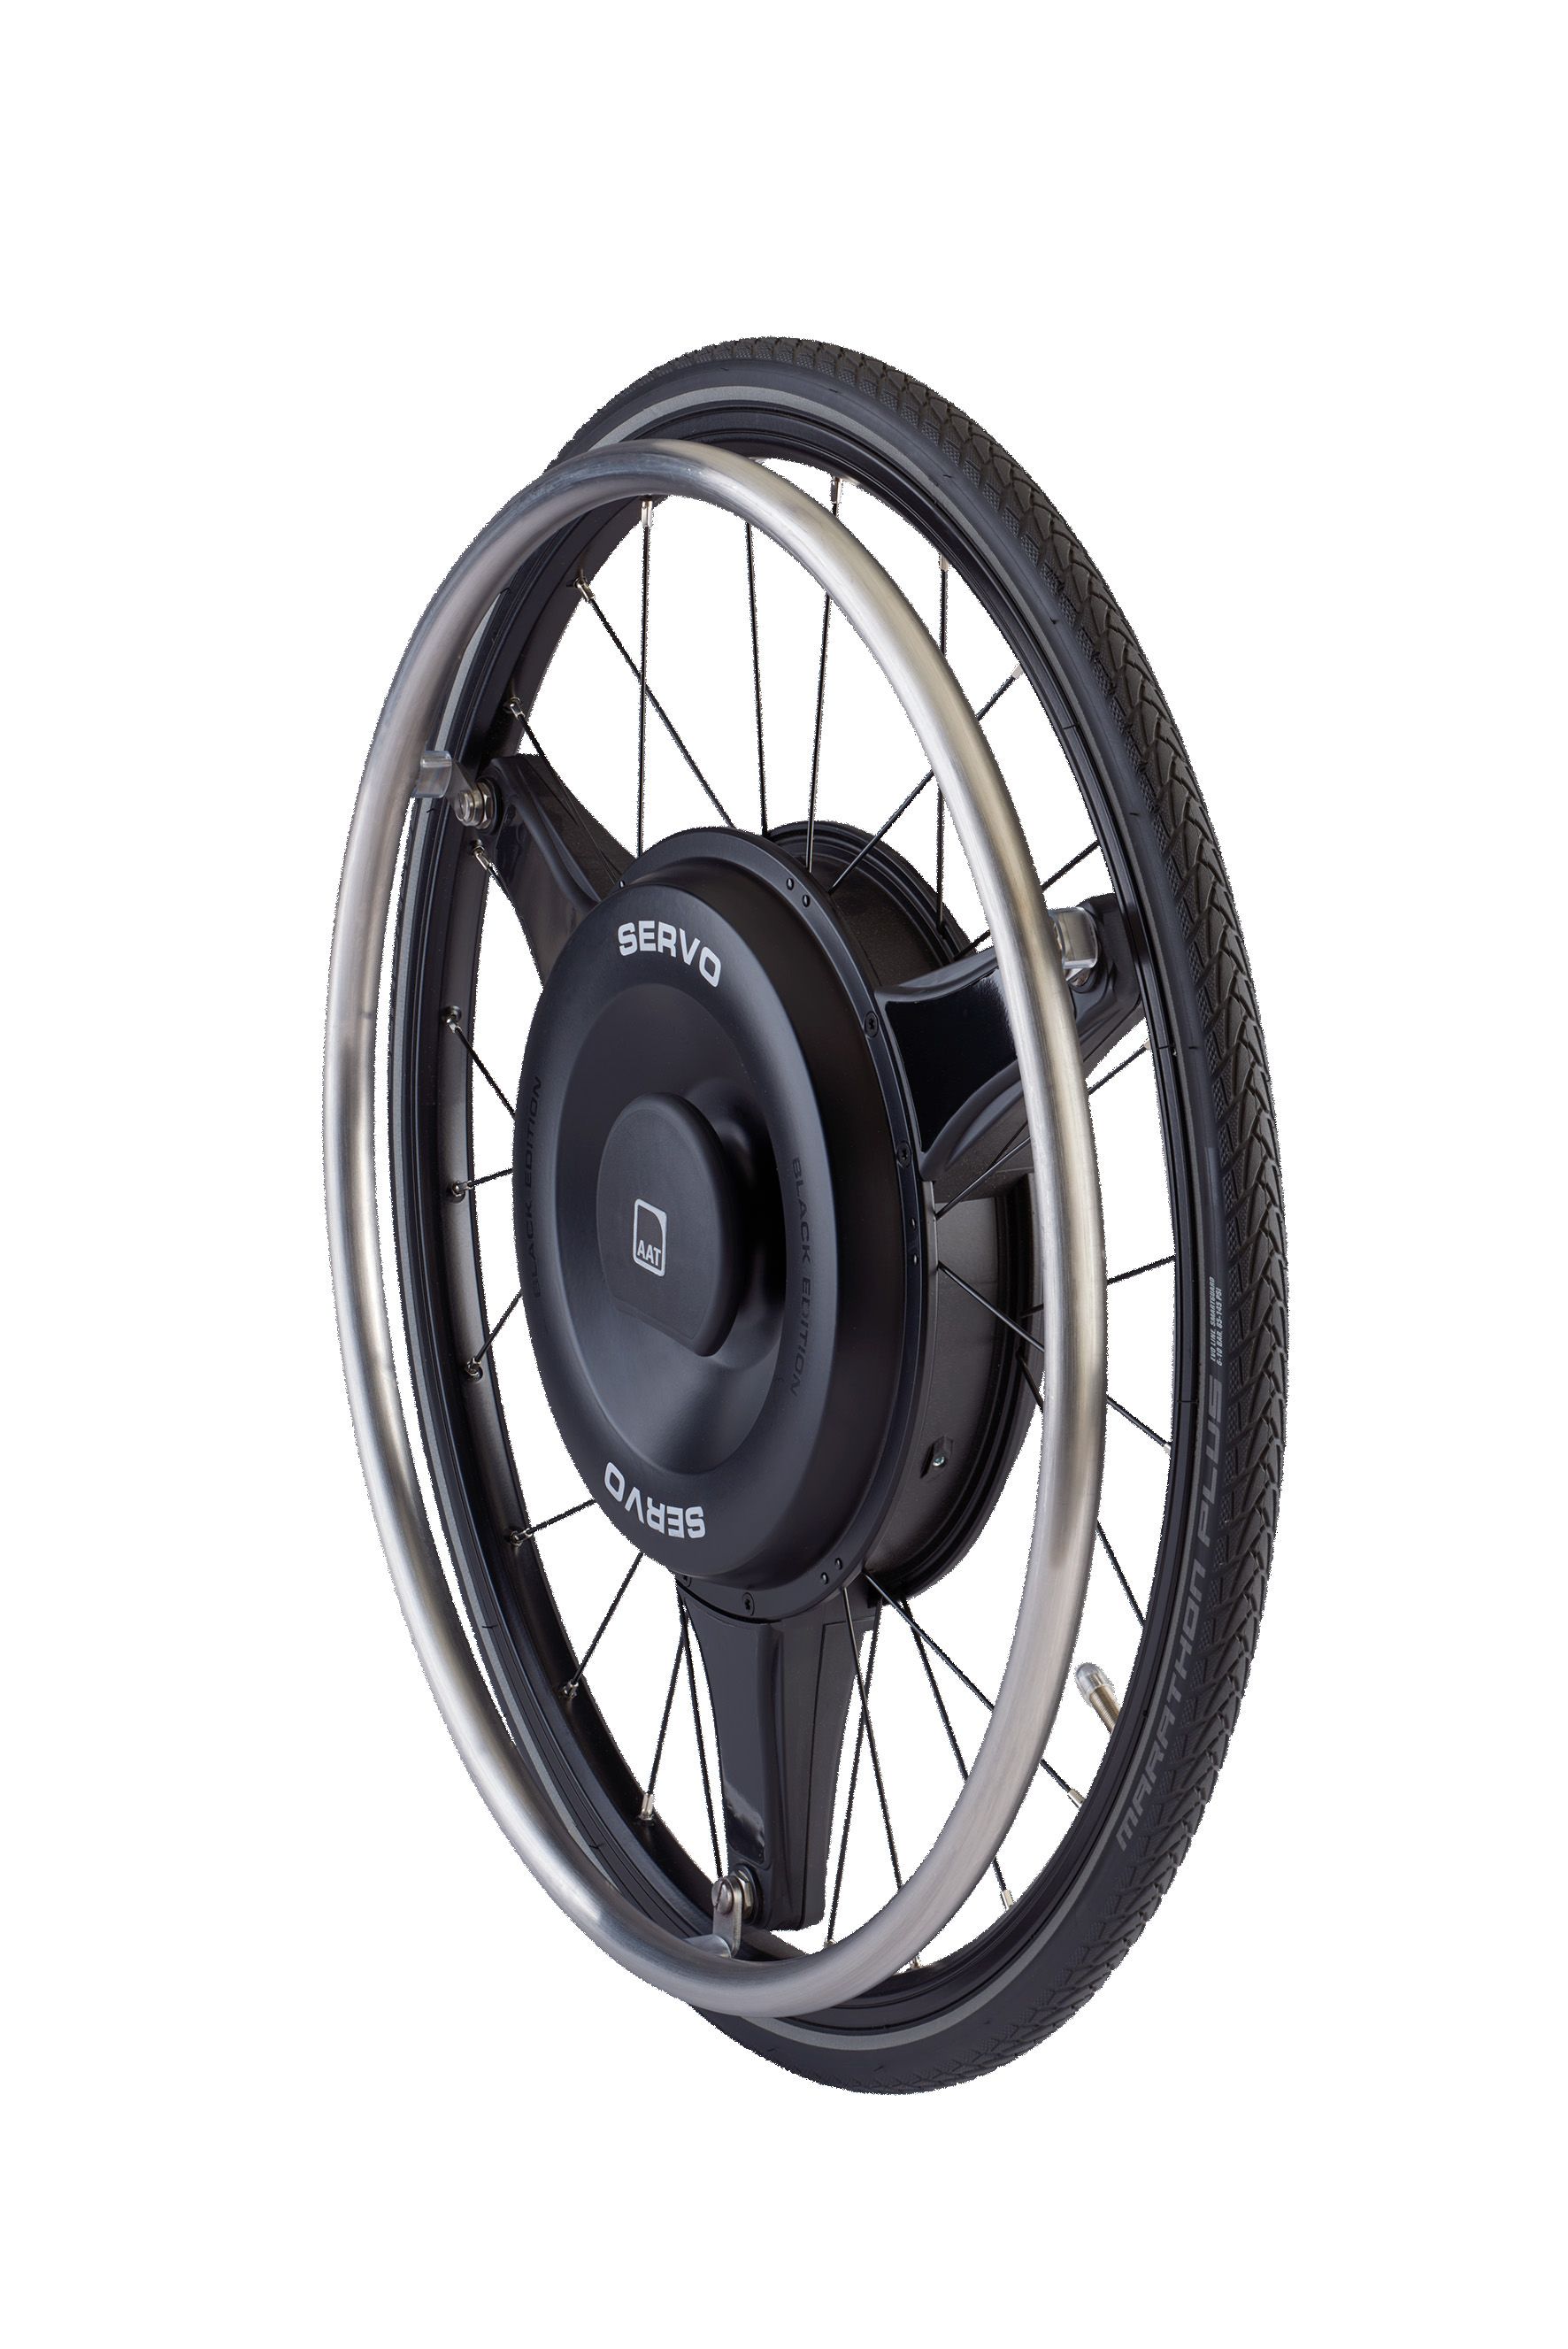 Auf dem Bild ist das freigestellte Rad des SERVO-Antriebs auf weißem Hintergrund zu sehen. Es handelt sich um einen schwarzen schlichten Radnabenantrieb mit silbernen Speichen und einem schwarzen Rollstuhlreifen.